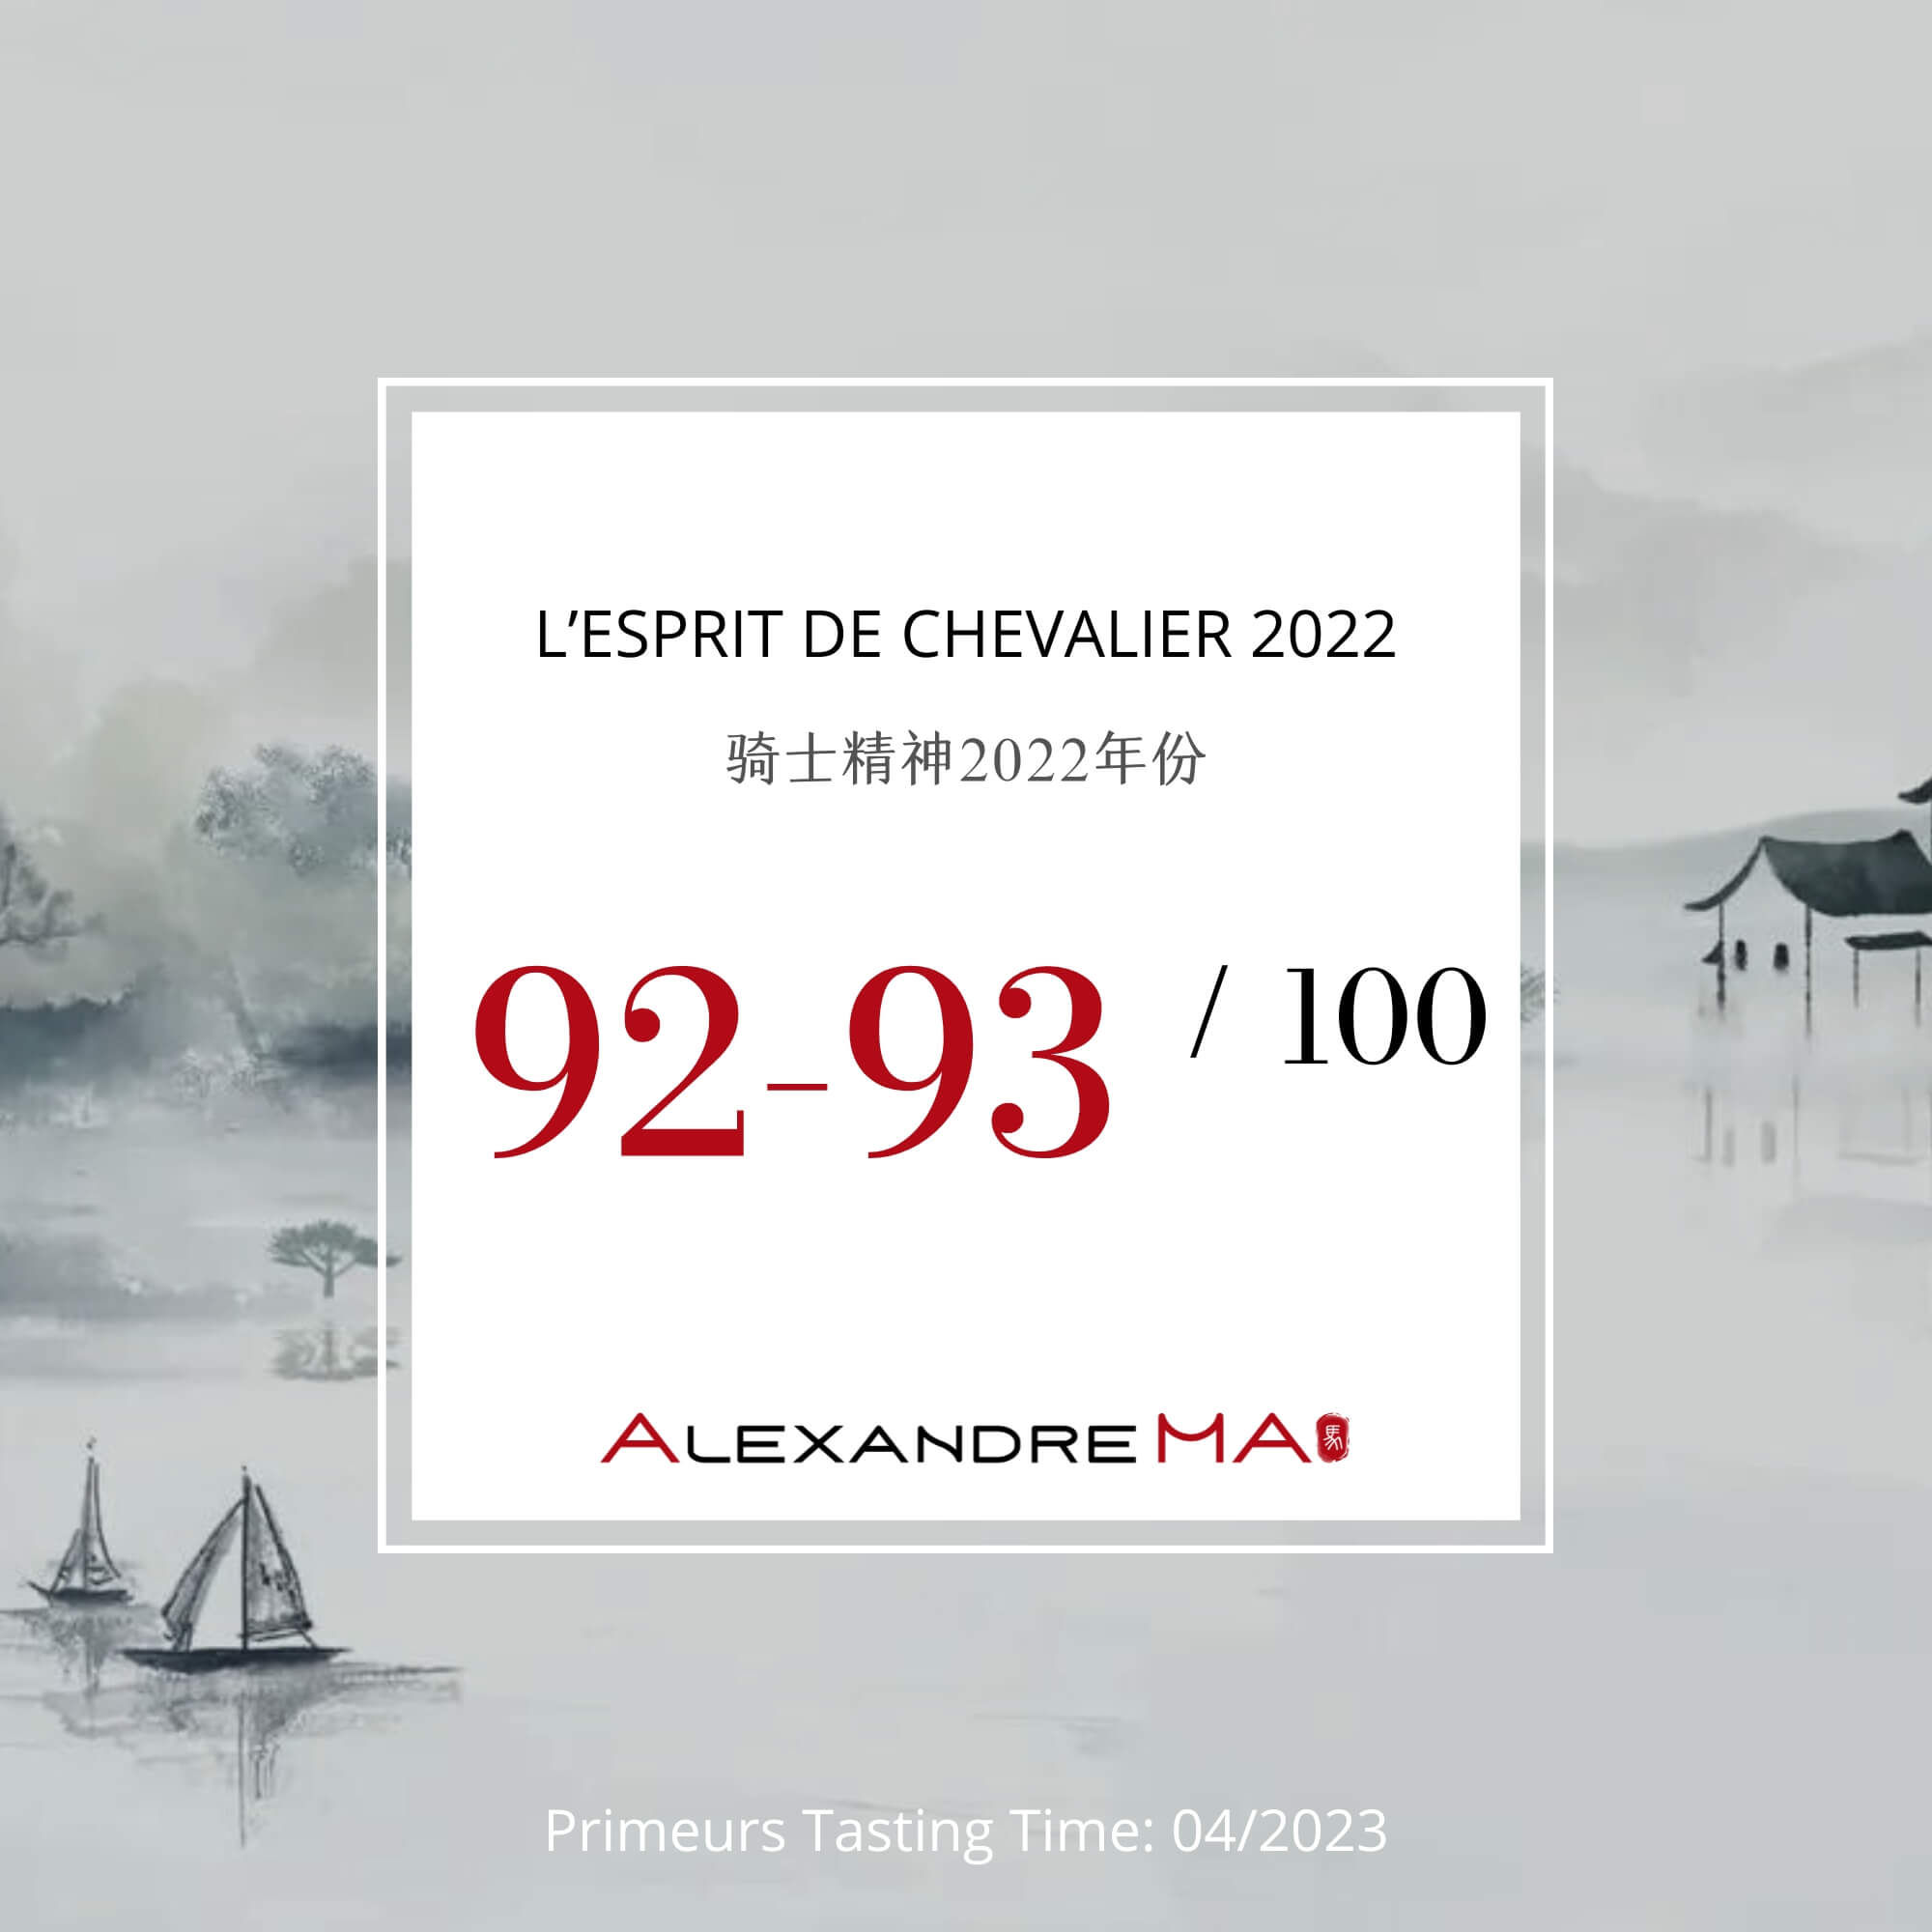 Domaine de Chevalier – L’Esprit de Chevalier 2022 Primeurs - Alexandre MA